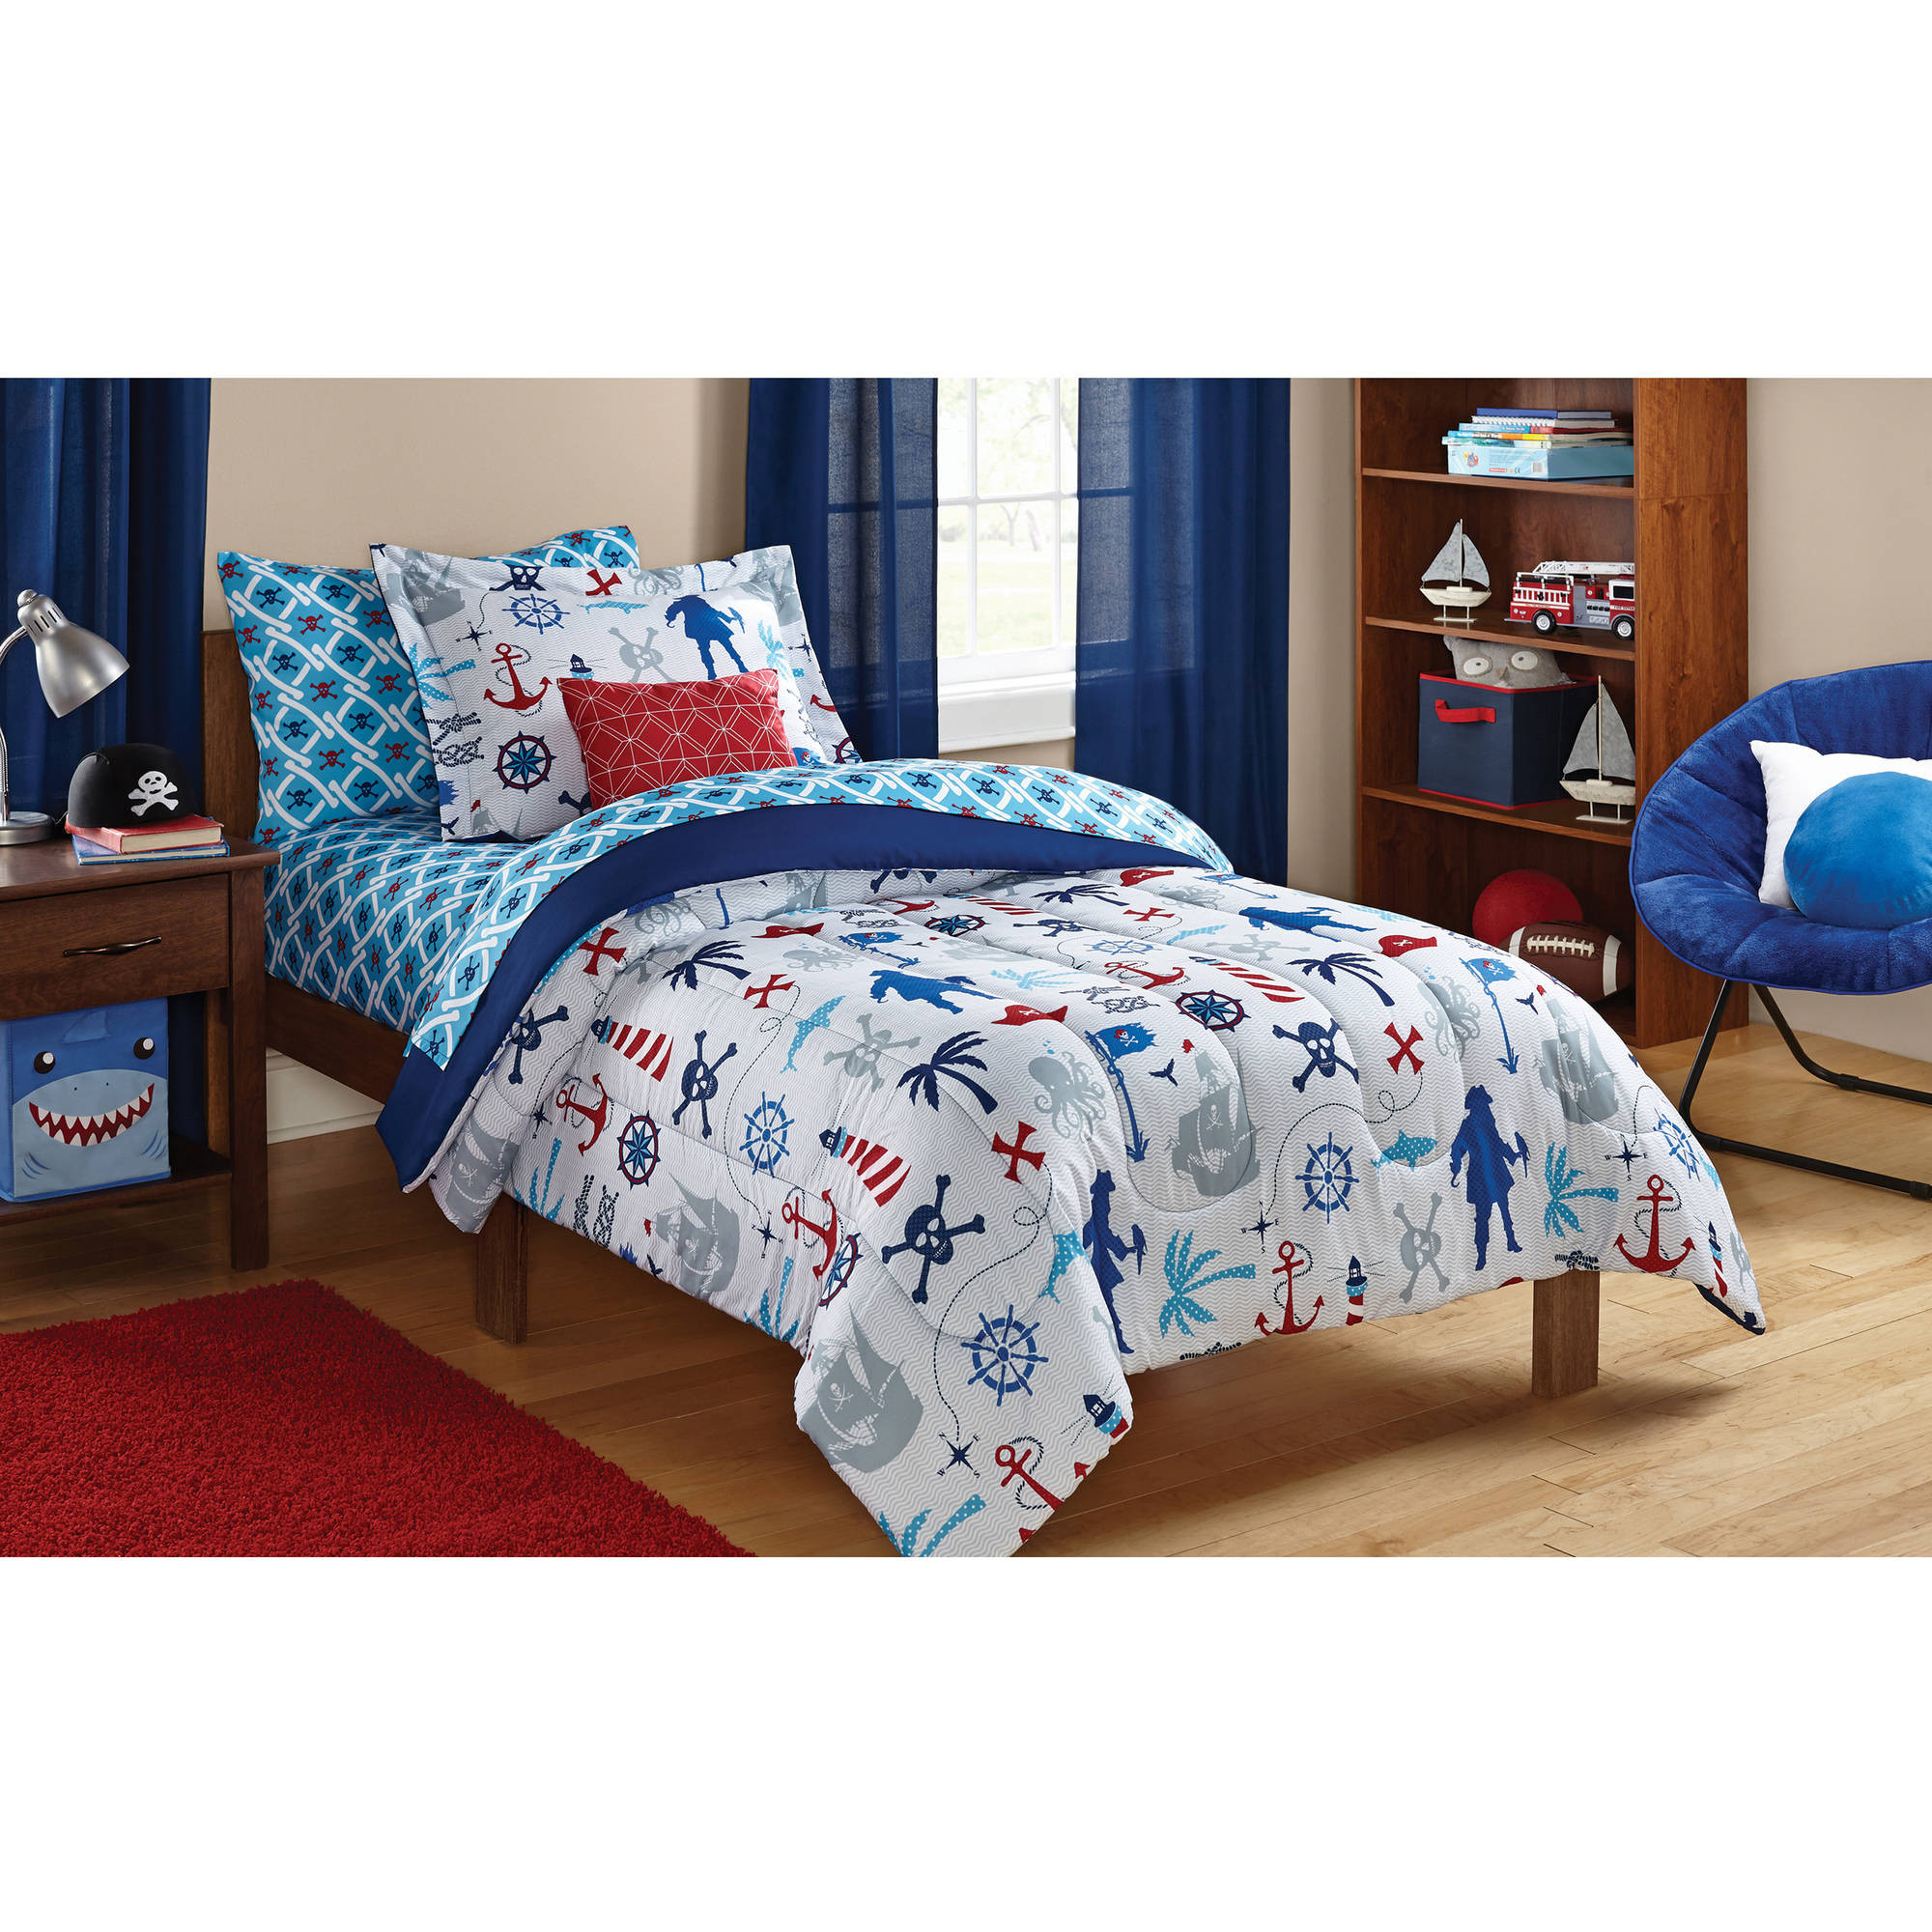 Walmart Bedroom Sets For Kids
 Mainstays Kids Woodland Bed in a Bag Bedding Set Walmart